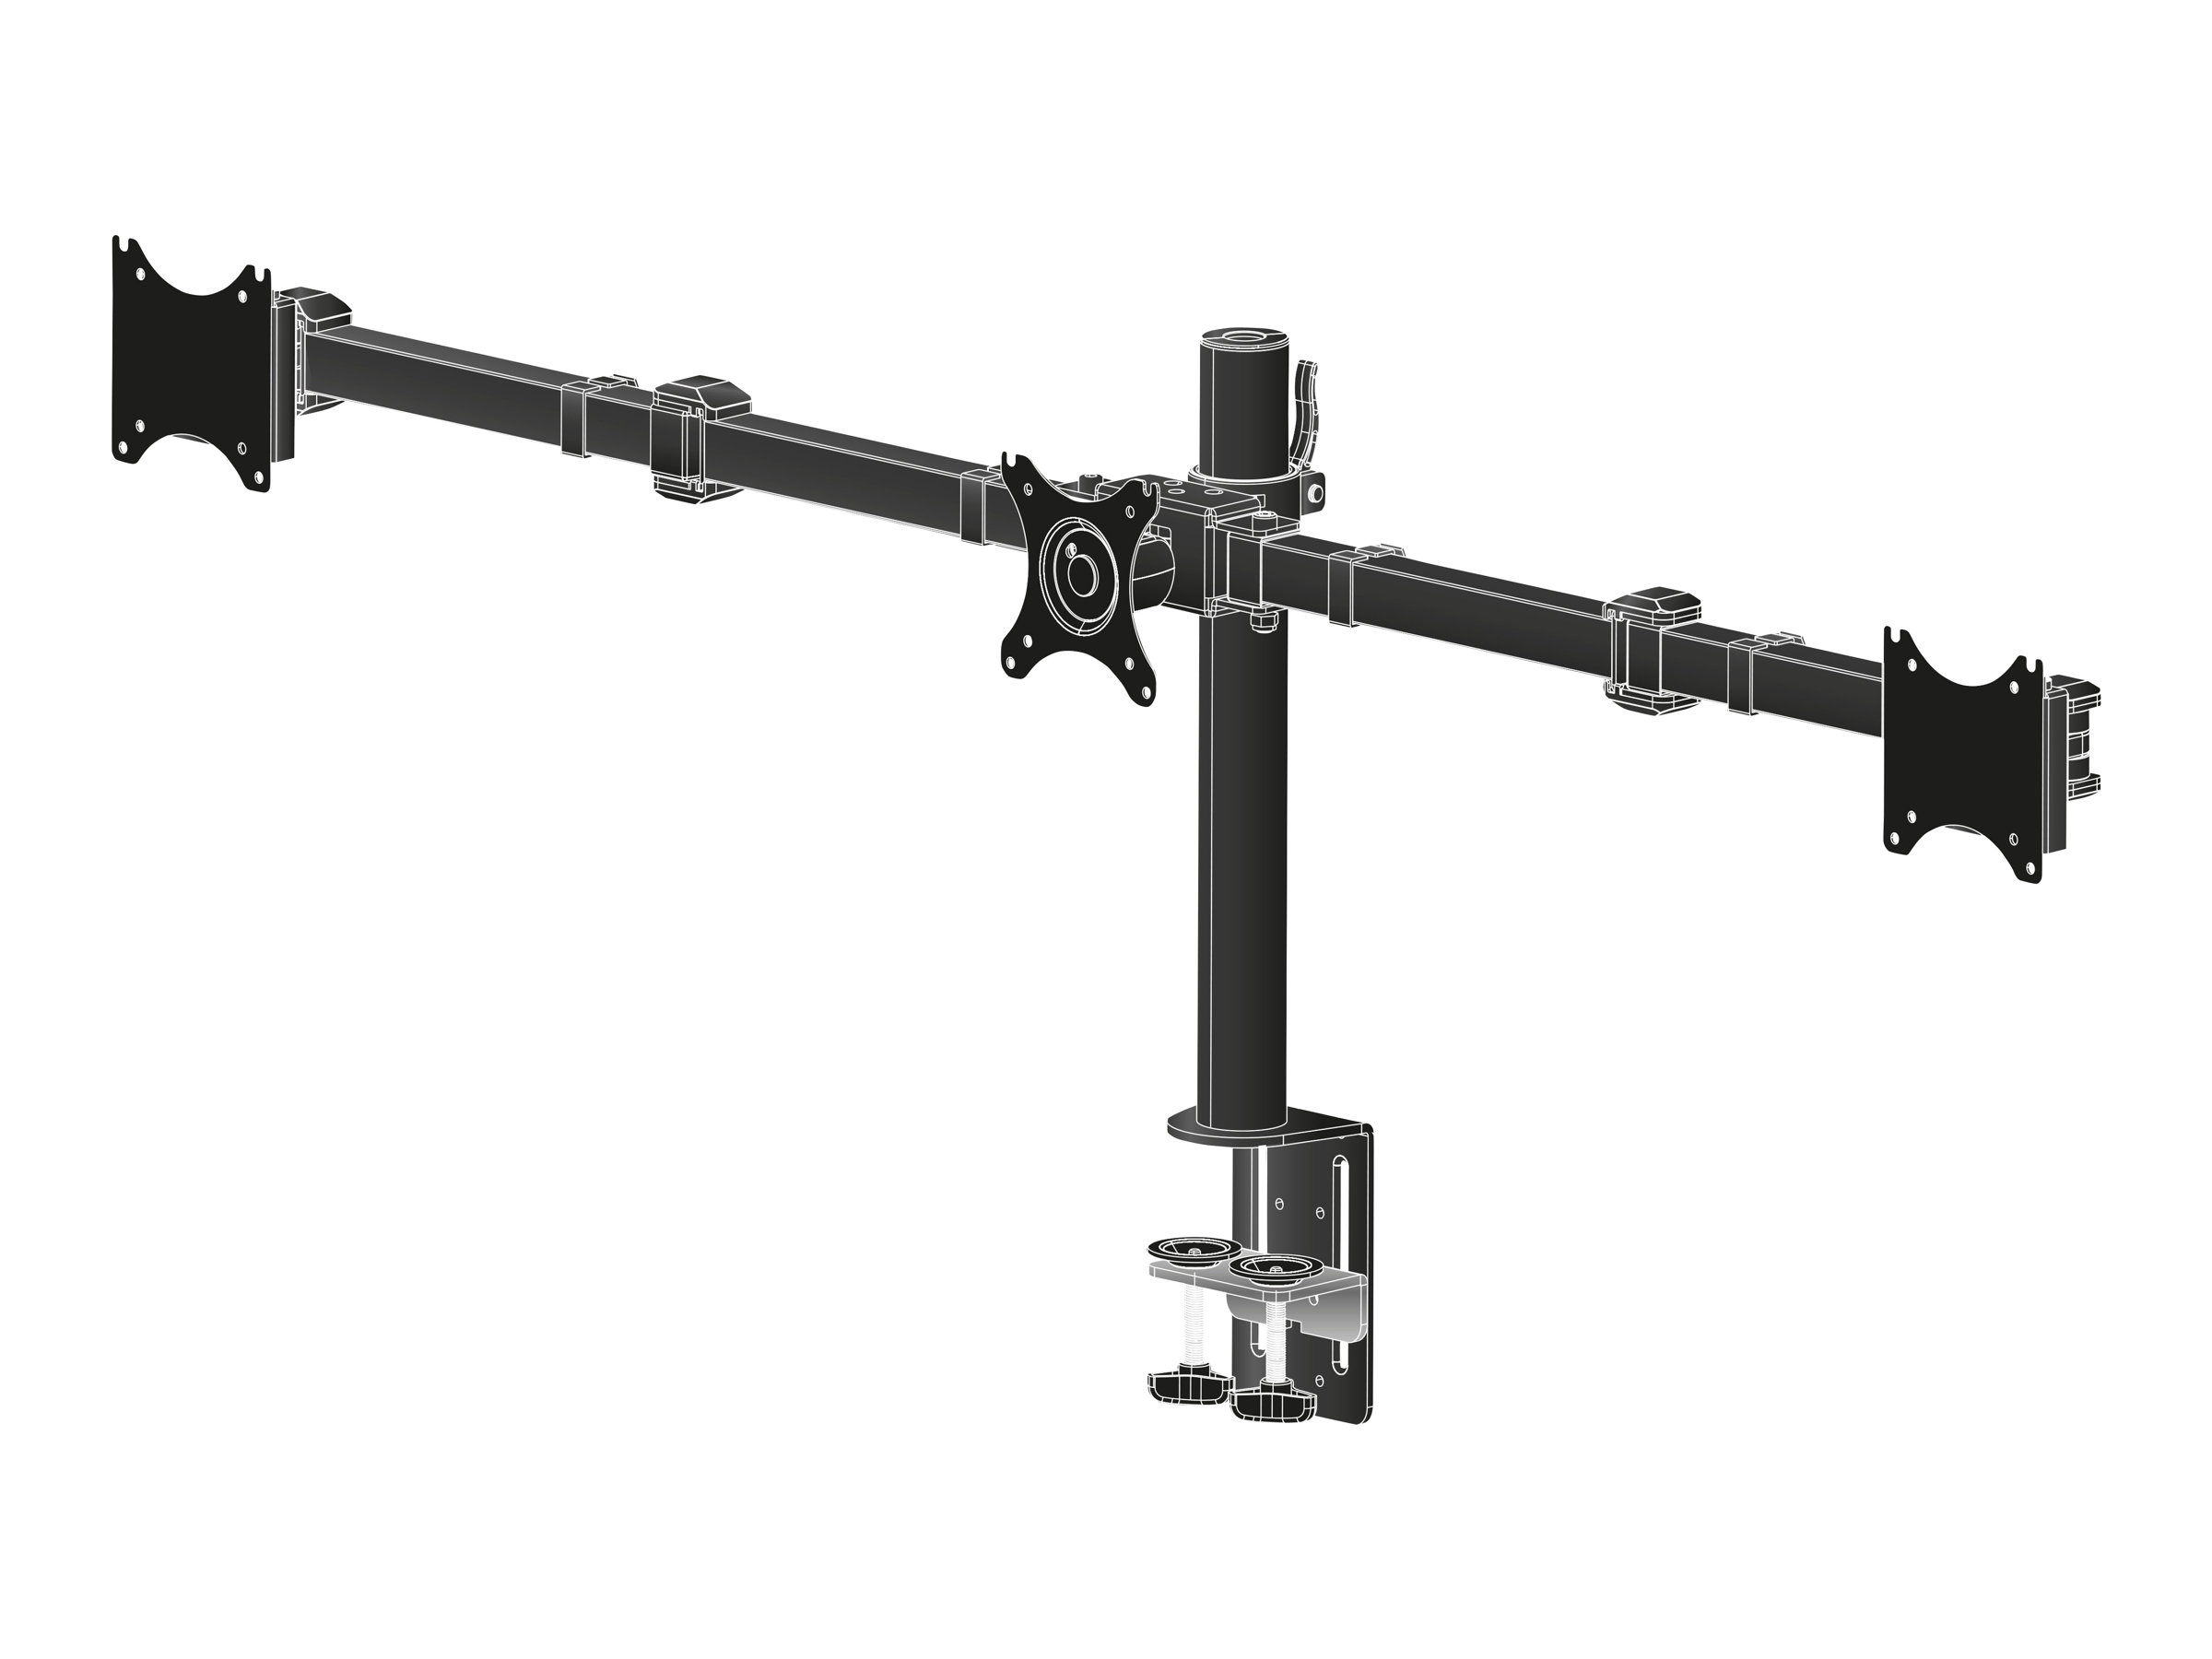 Iiyama DS1003C-B1 - Aufstellung - einstellbarer Arm - für 3 Monitore - Schwarz - Bildschirmgröße: 25.4-68.6 cm (10"-27")